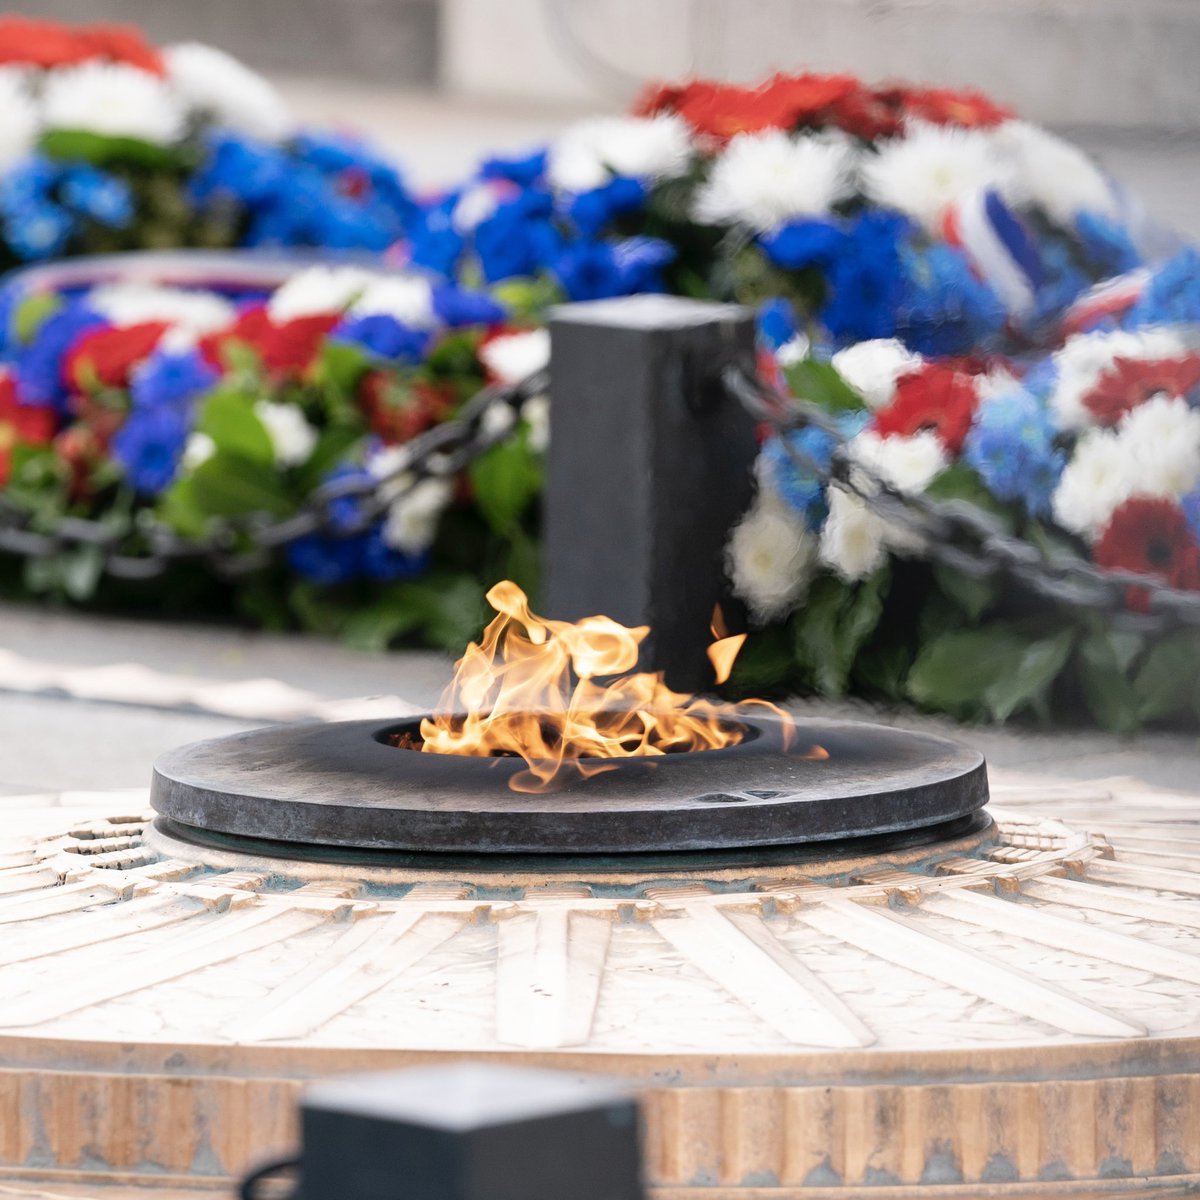 Le 11 novembre 1923, sur la tombe du Soldat inconnu, était allumée pour la première fois une flamme qui depuis ne s’est jamais éteinte.
                         
Depuis 100 ans, sans discontinuer.

Aux pires heures de la Seconde Guerre mondiale, le jour même de l’invasion nazie,…